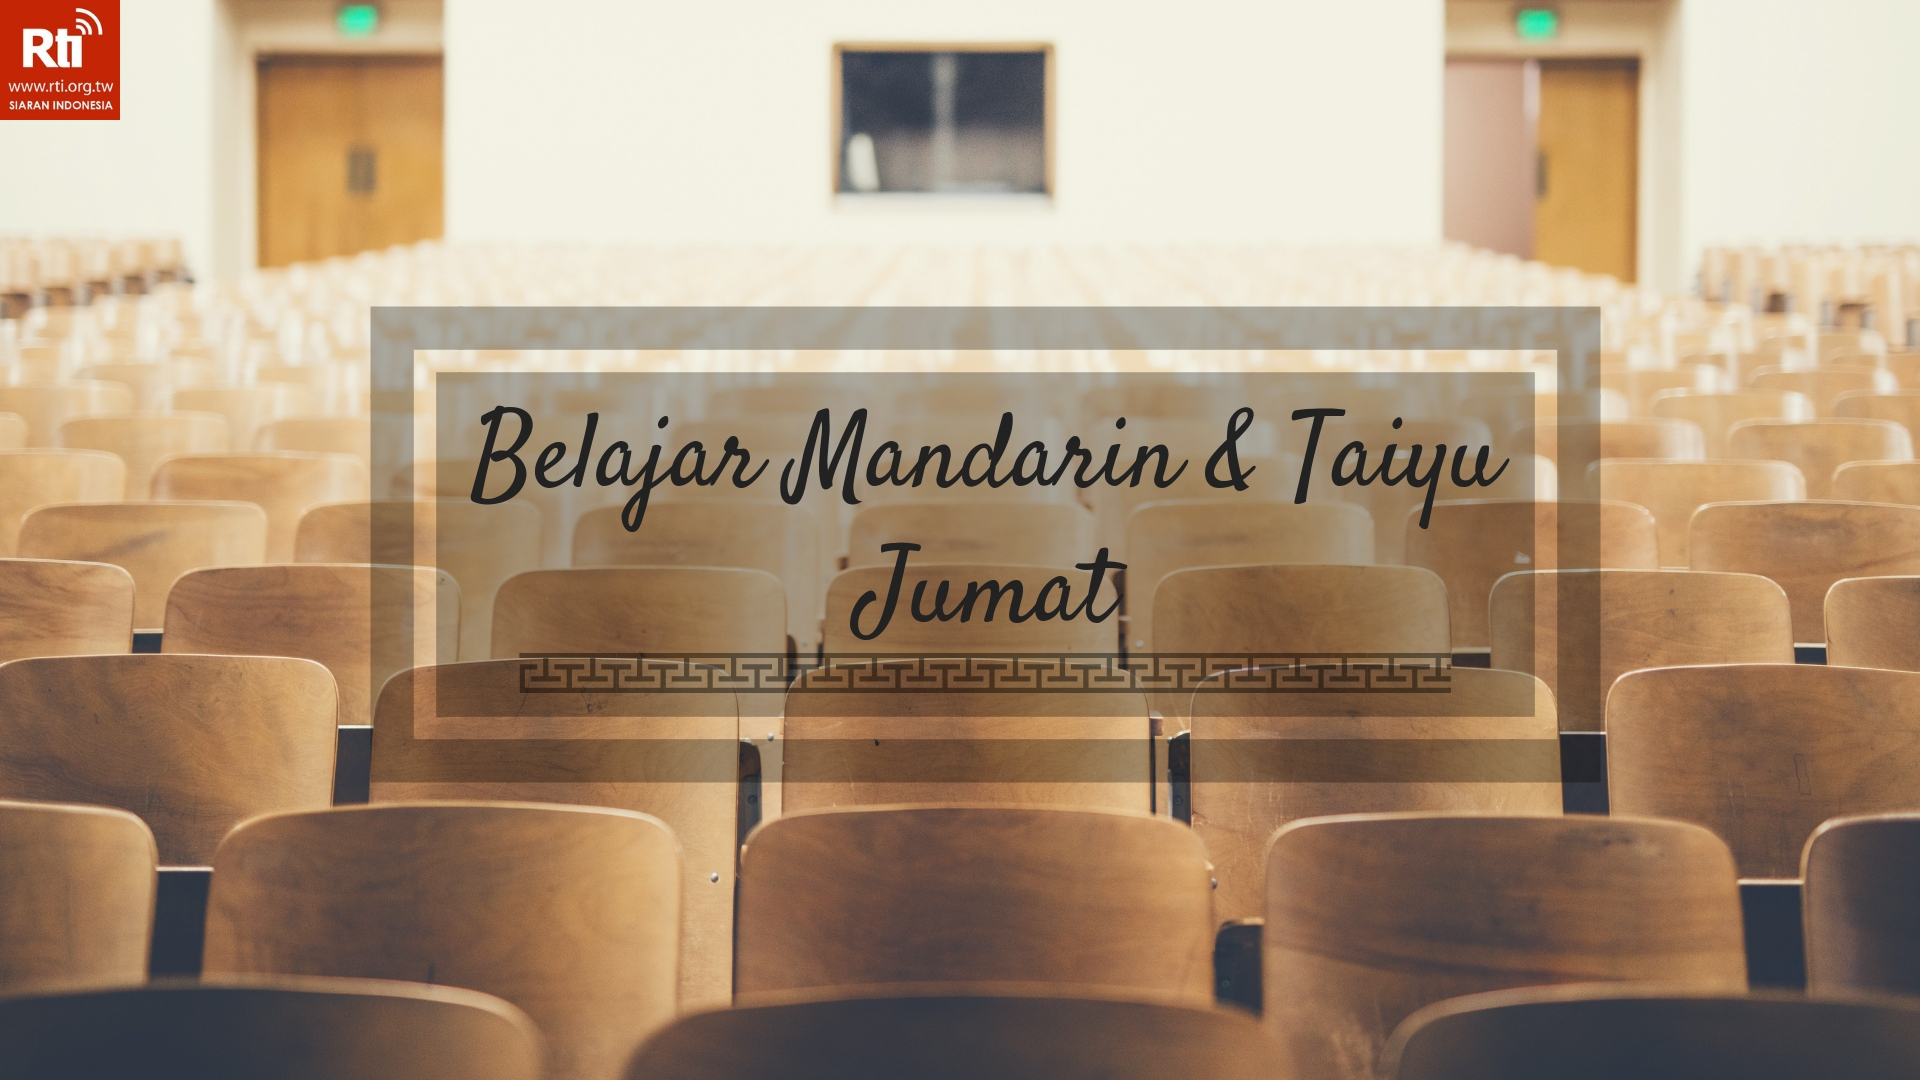 Belajar Mandarin & Taiyu Jumat - 2022-02-04